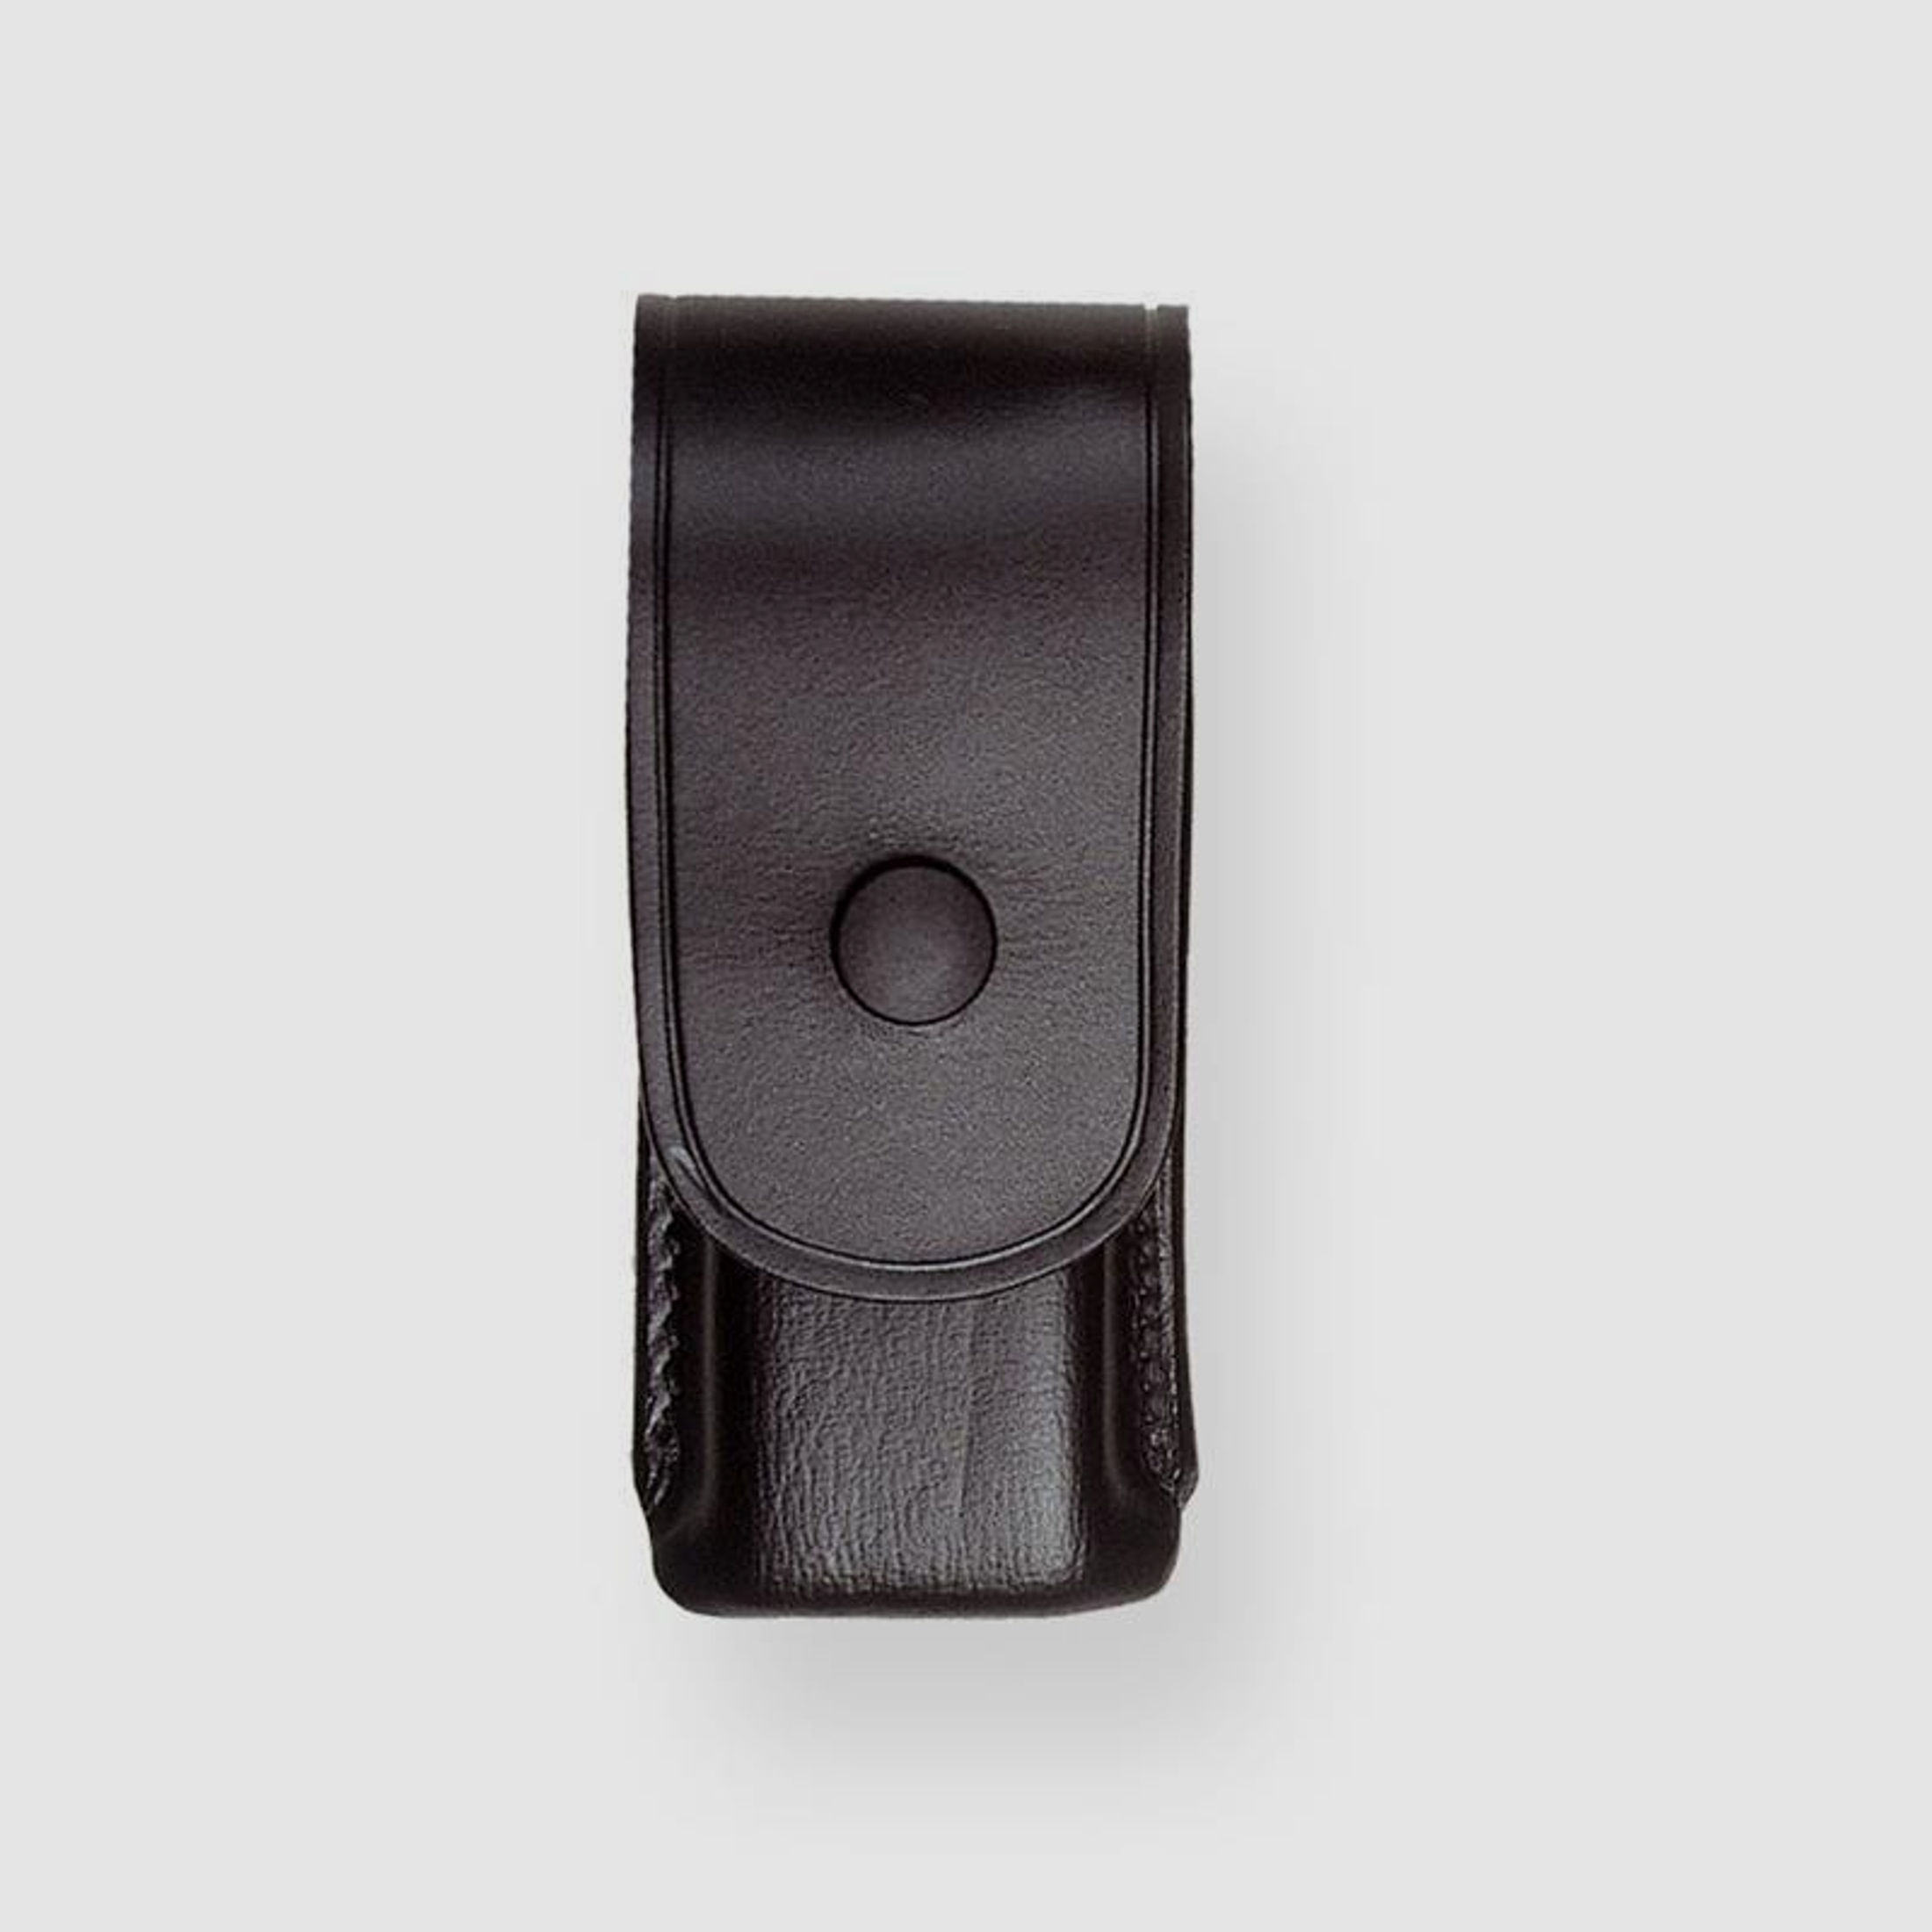 Sickinger MAGAZIN BOX  für Ersatzmagazin Pocket Mod. 7,65 ( 11 x 28 mm ) Braun